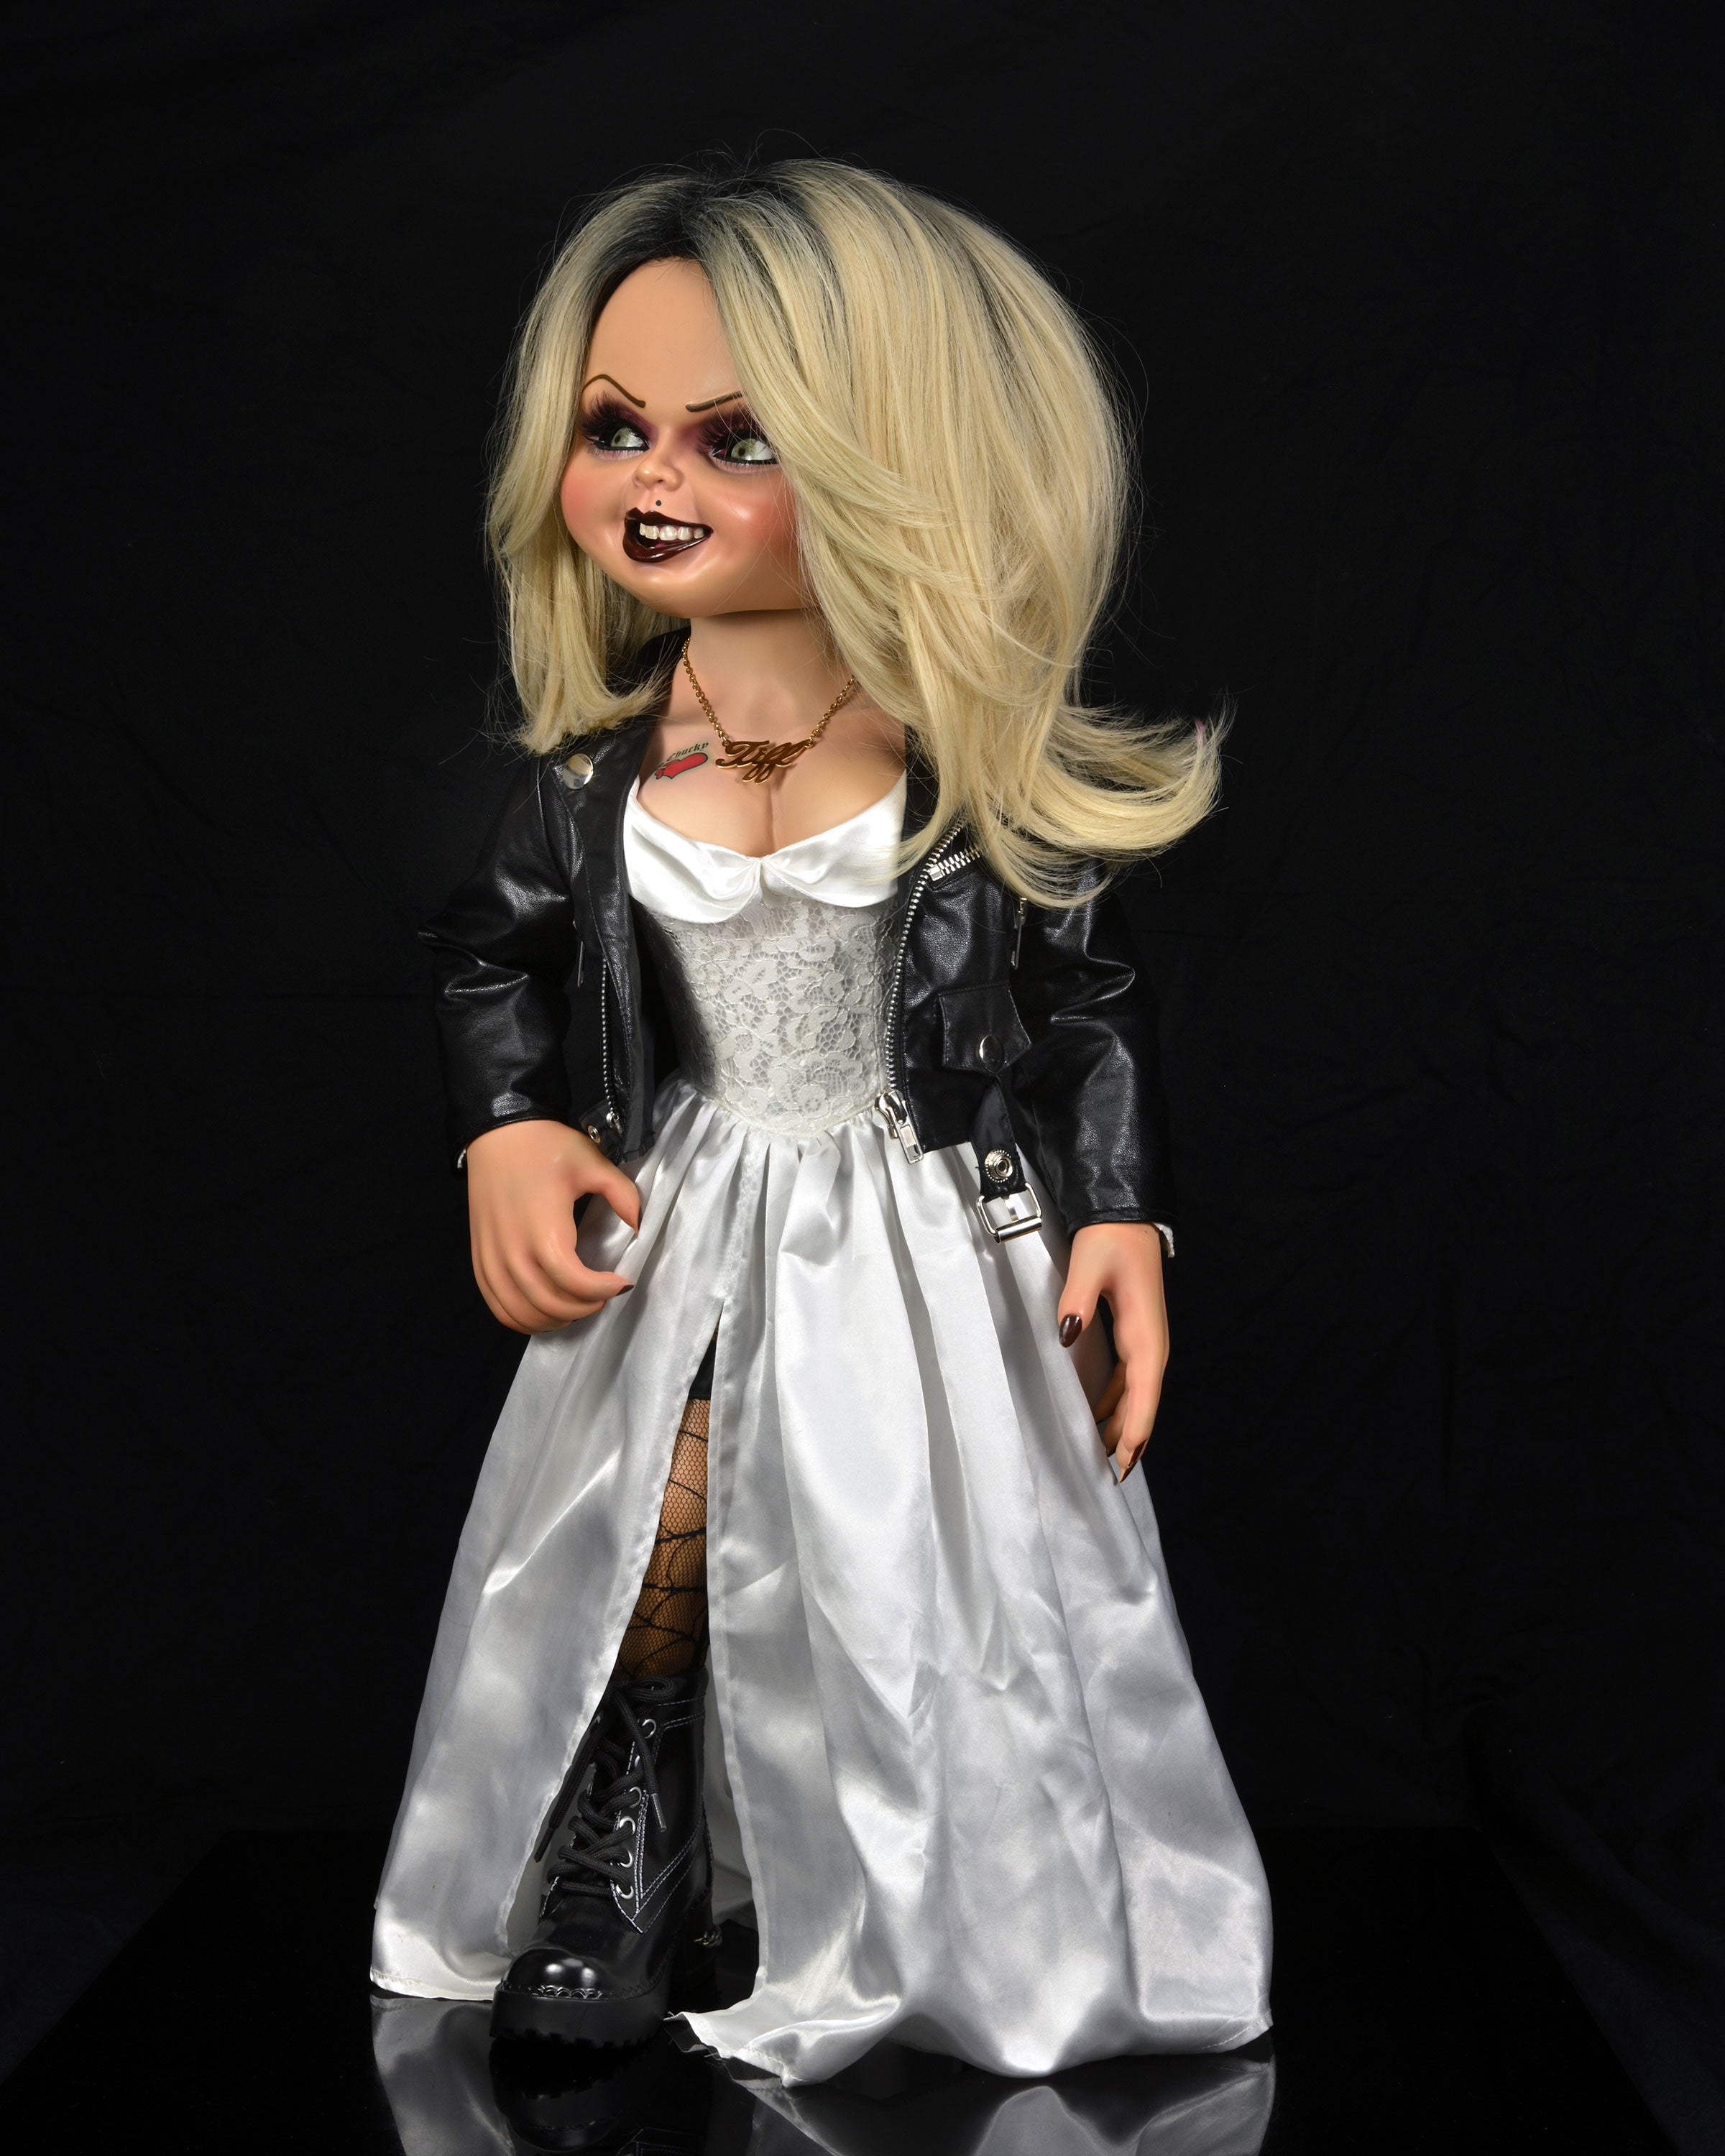 Bride of Chucky - 1:1 Replica - Life-Size Tiffany (PRE-ORDER) – NECA